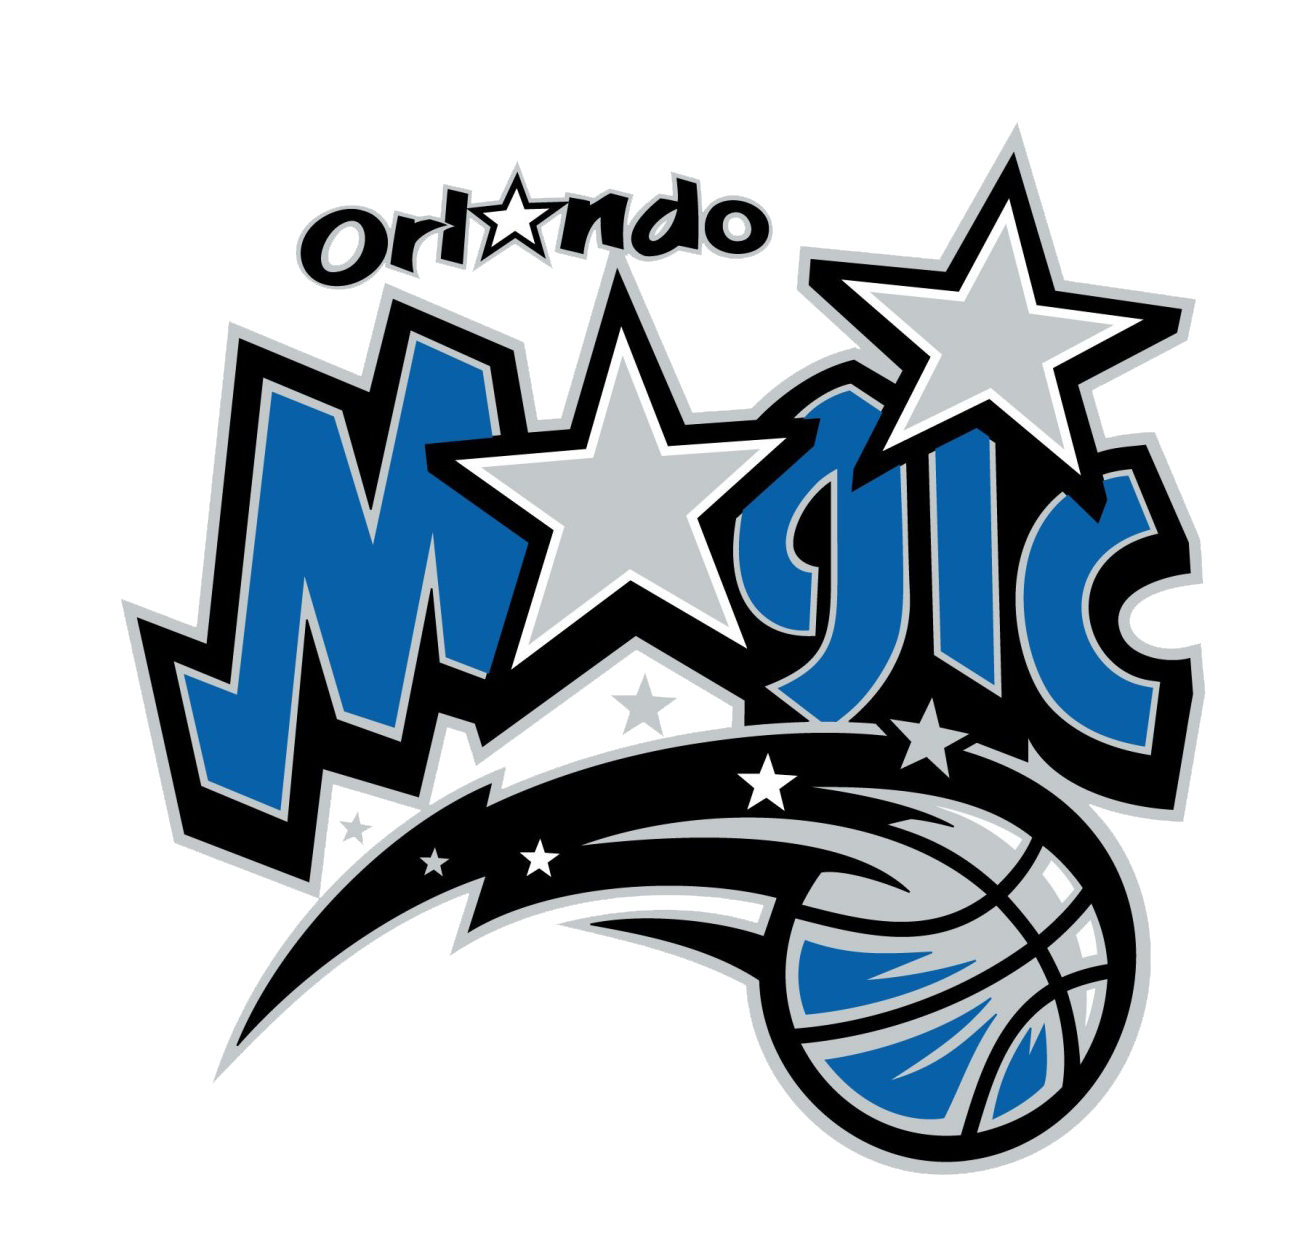 Orlando Magic PNG pngteam.com